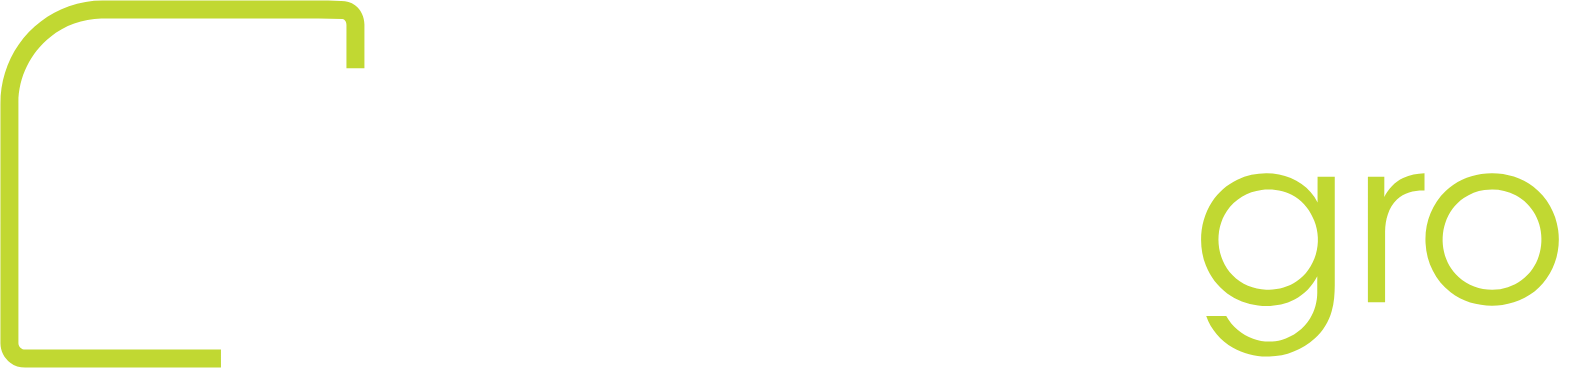 Urban-gro
 logo grand pour les fonds sombres (PNG transparent)